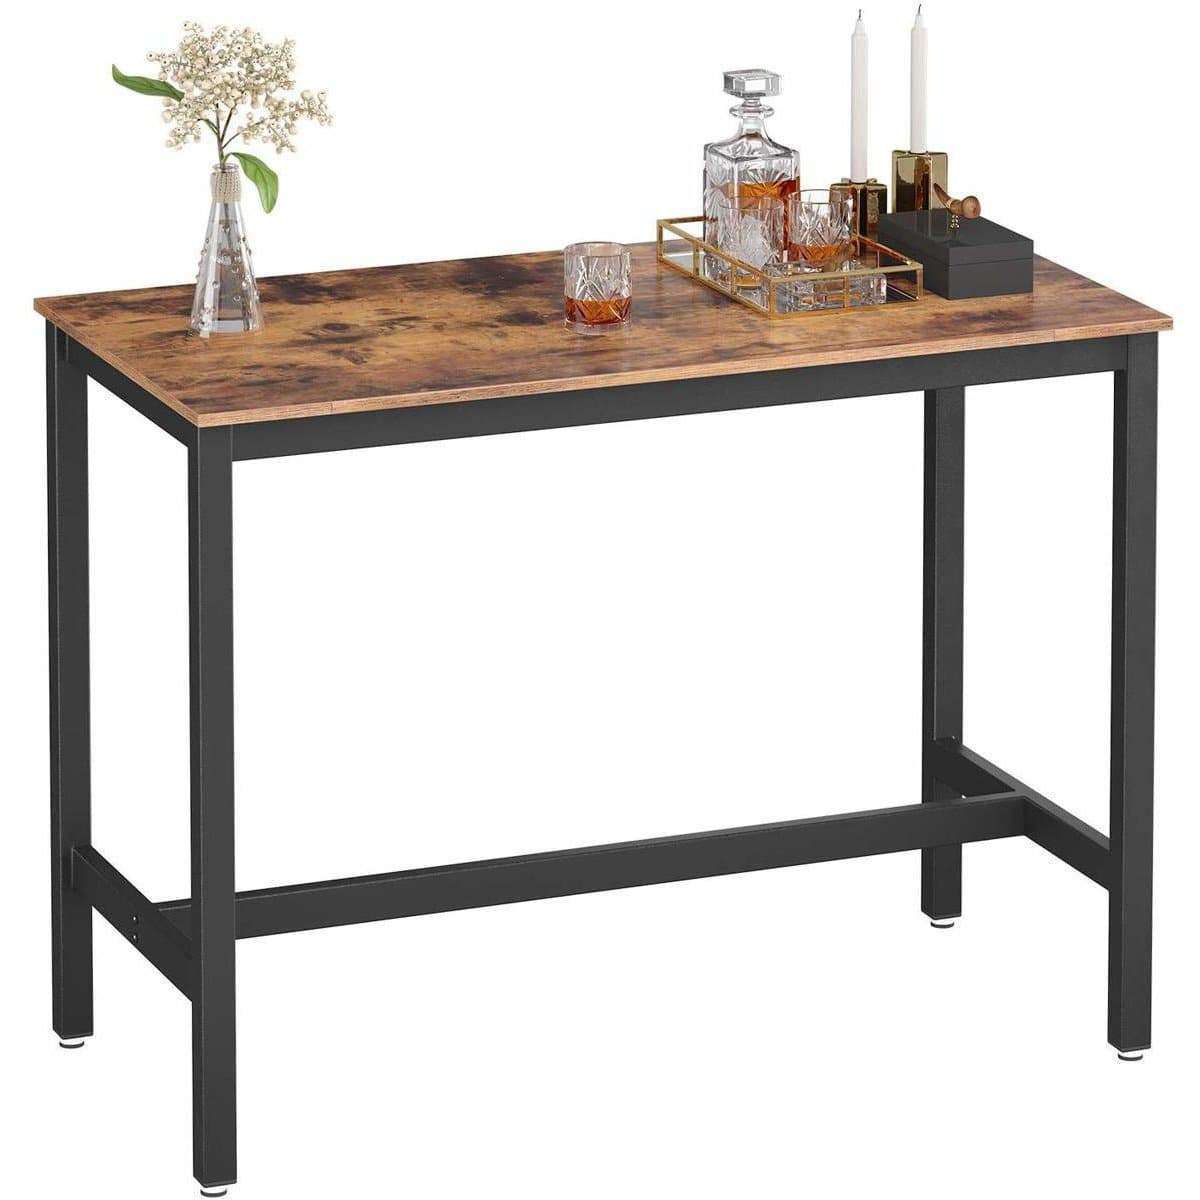 Table de bar en bois de Nancy - Table de cuisine vintage - Tables de bar de cuisine - Industriel - Marron - 120 x 60 x 90 cm (L x L x H)